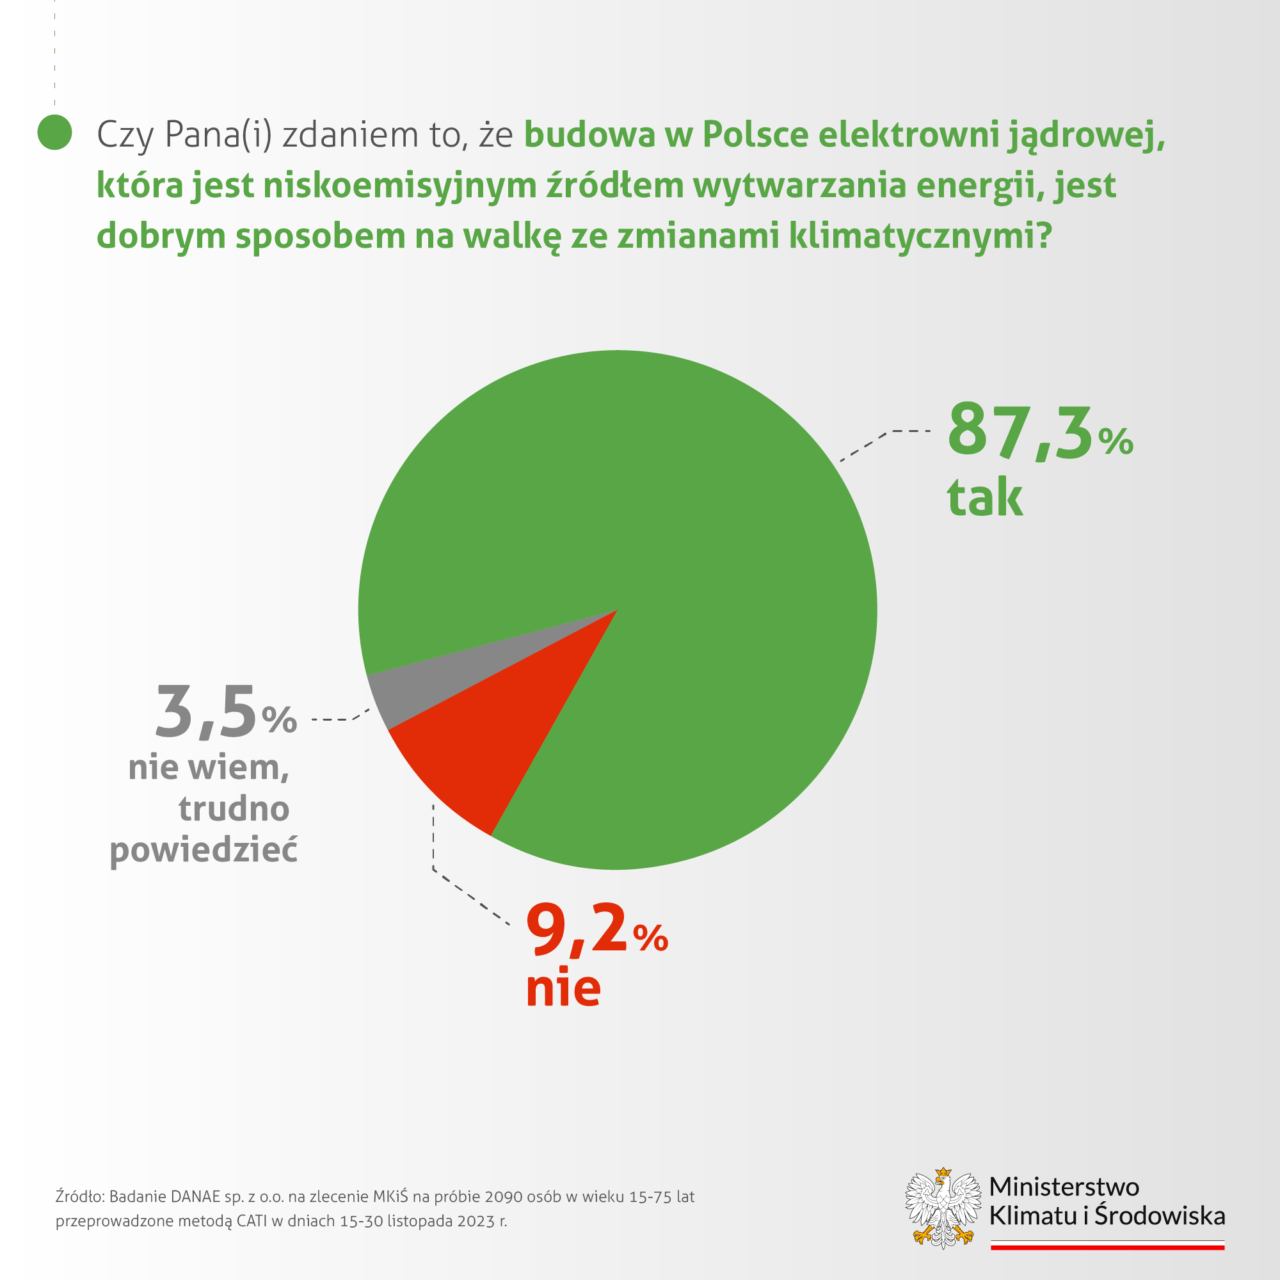 Wykres kołowy przedstawiający wyniki ankiety dotyczącej opinii na temat budowy w Polsce elektrowni jądrowej jako metody walki ze zmianami klimatycznymi: 87,3% respondentów uważa, że to dobry sposób, 9,2% jest przeciwnego zdania, a 3,5% nie ma zdania lub trudno im odpowiedzieć. Na dole znajduje się logo Ministerstwa Klimatu i Środowiska oraz źródło danych: "Badanie DANE sp. z o.o. na zlecenie MKiŚ na próbie 2090 osób w wieku 15-75 lat przeprowadzone metodą CATI w dniach 15-30 listopada 2023 r." Pokazuje to, że elektrownie atomowe cieszą się wysokim poparciem